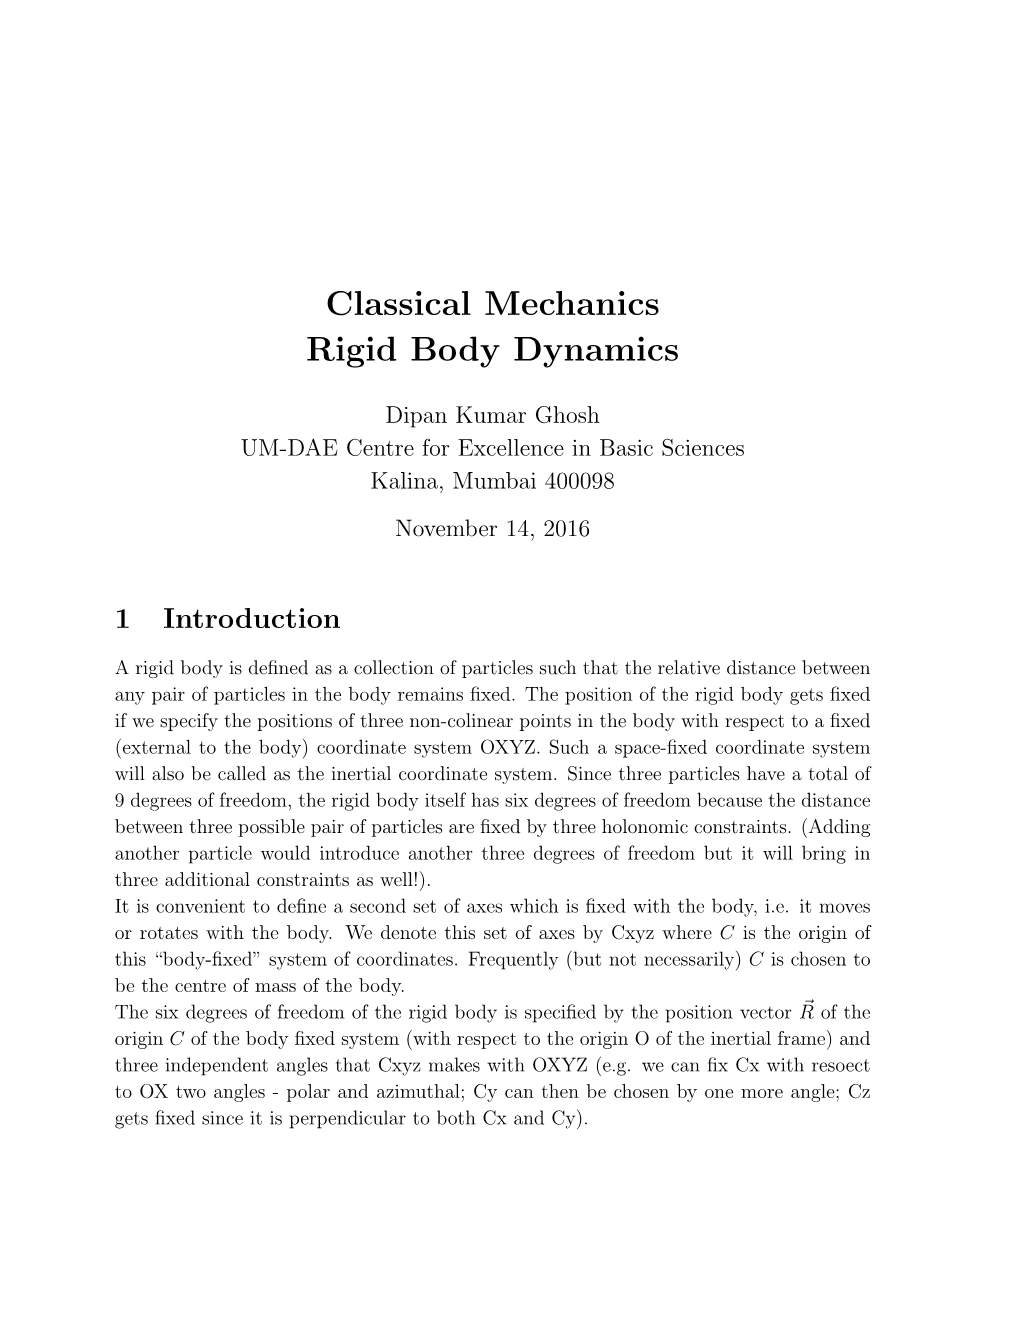 Classical Mechanics Rigid Body Dynamics